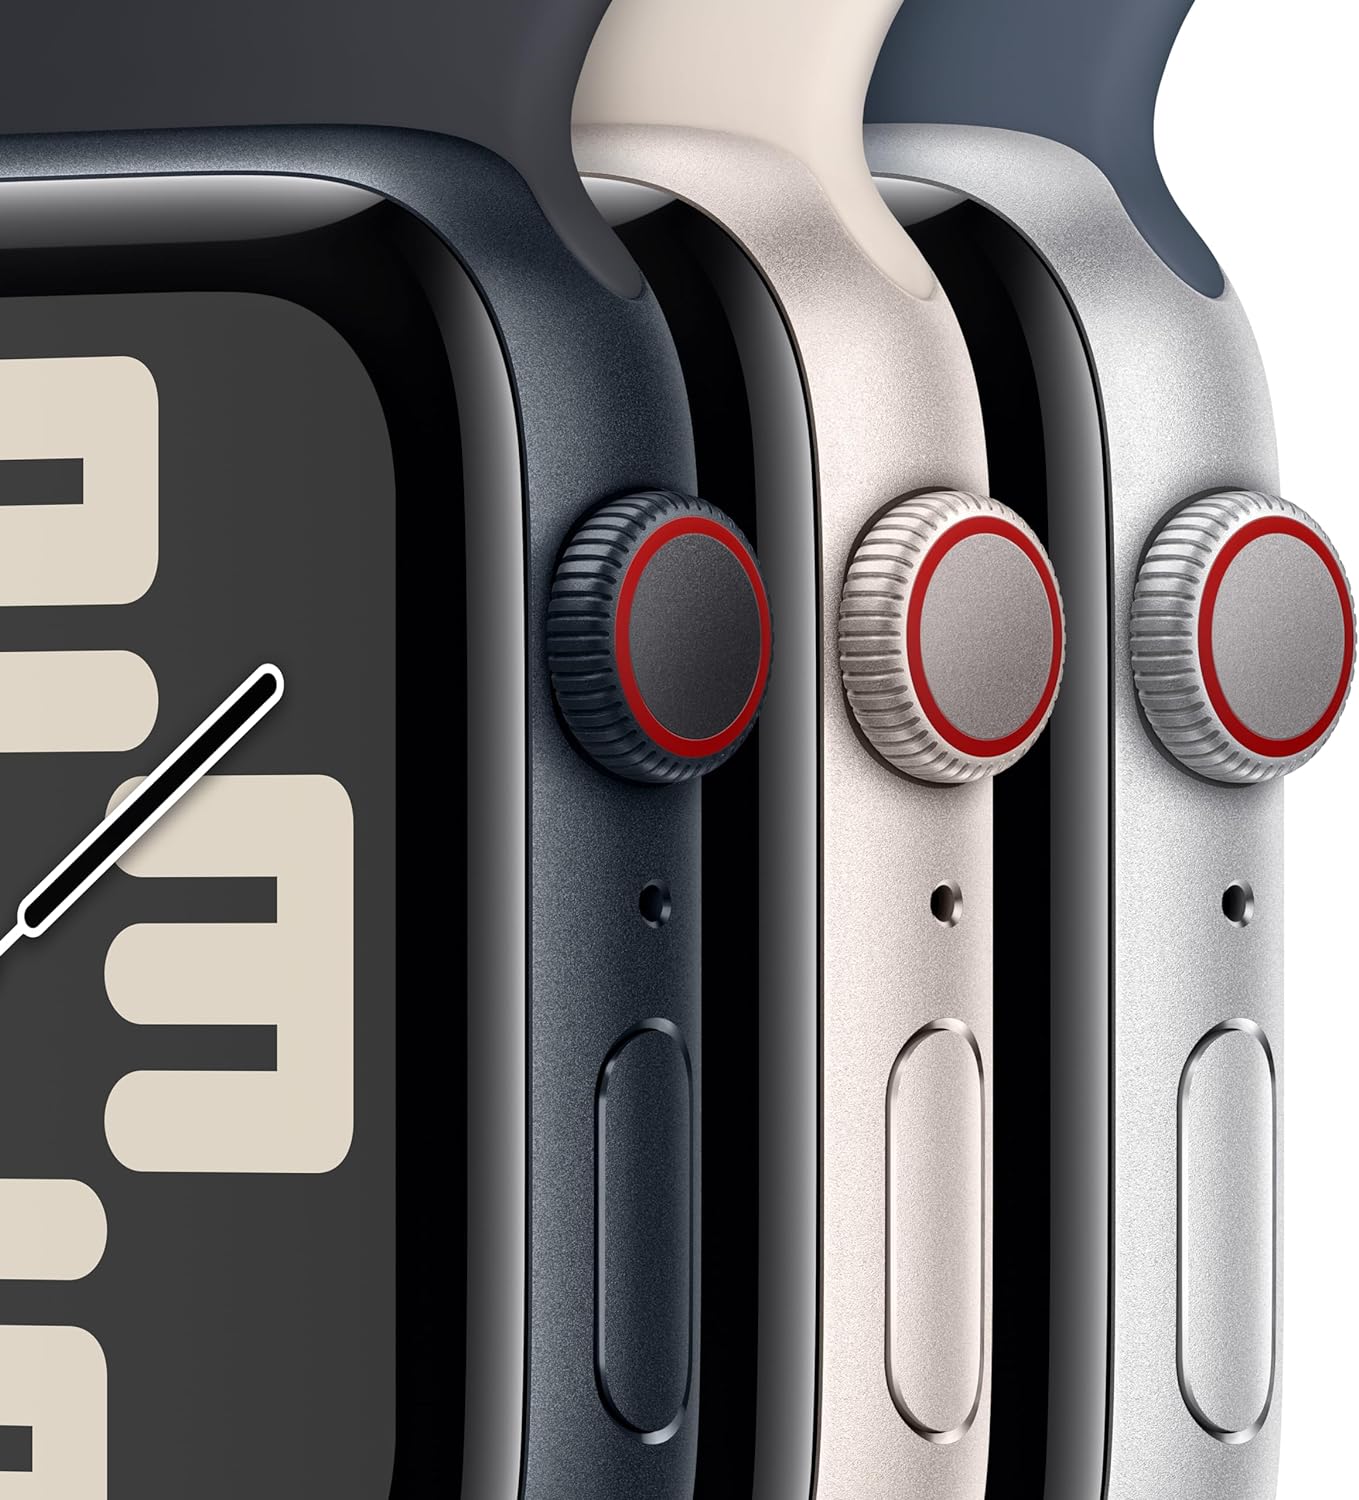 Apple Watch SE (الجيل الثاني) [GPS + Cellular 40mm] ساعة ذكية مع هيكل من الألومنيوم منتصف الليل مع حزام رياضي Midnight S/M. جهاز تتبع اللياقة البدنية والنوم، واكتشاف الأعطال، ومراقبة معدل ضربات القلب 